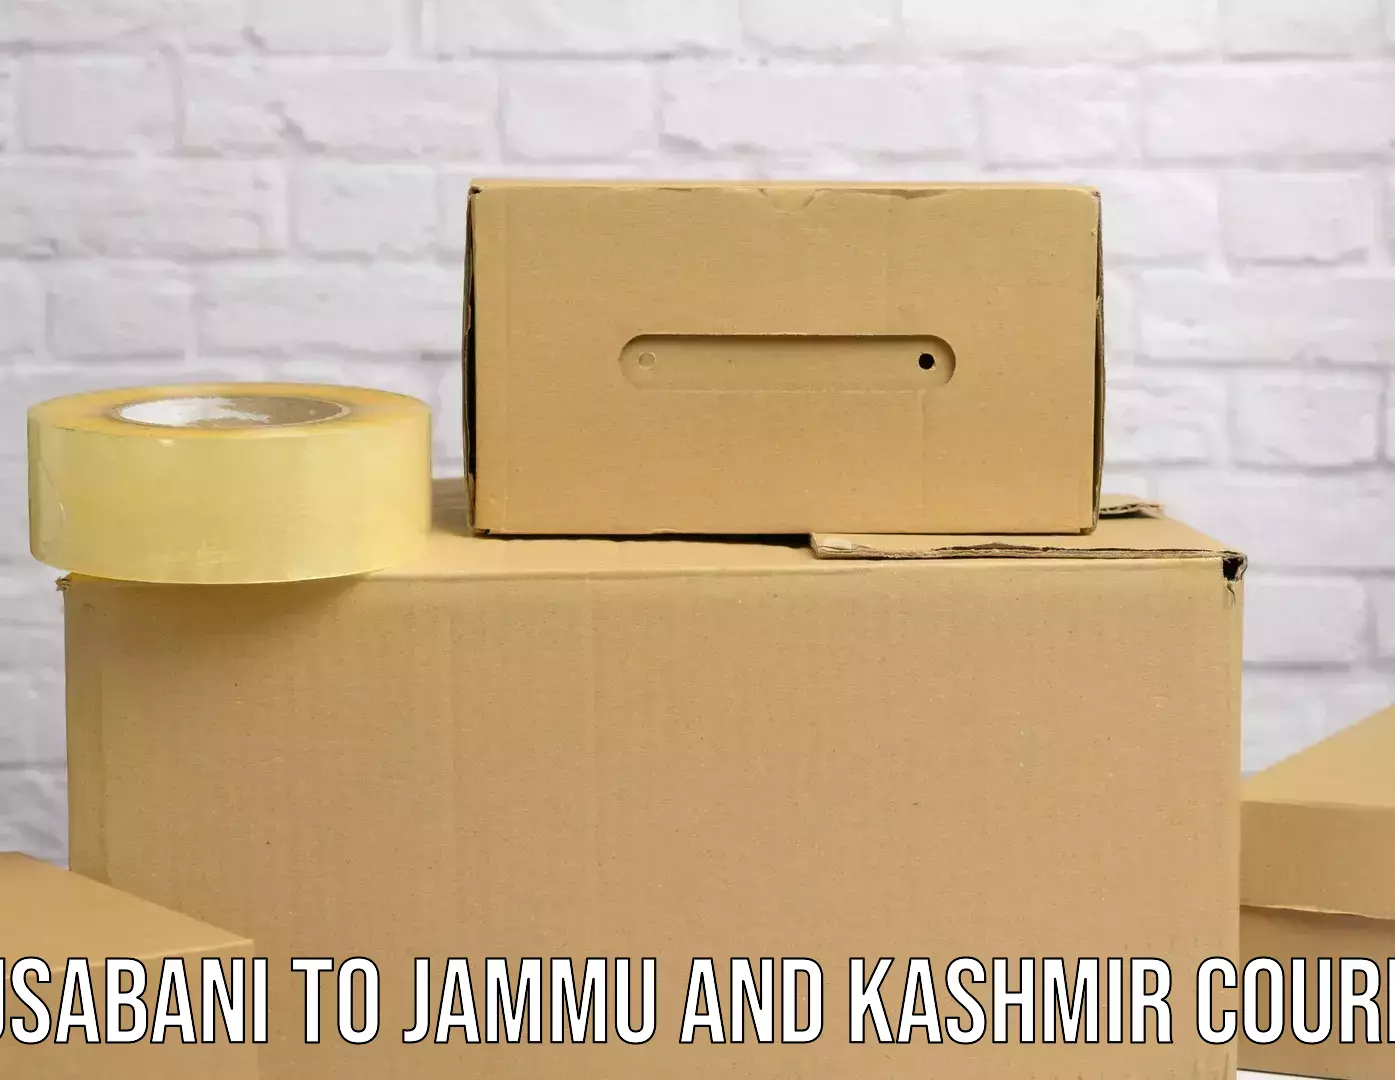 Ocean freight courier Musabani to Jammu and Kashmir